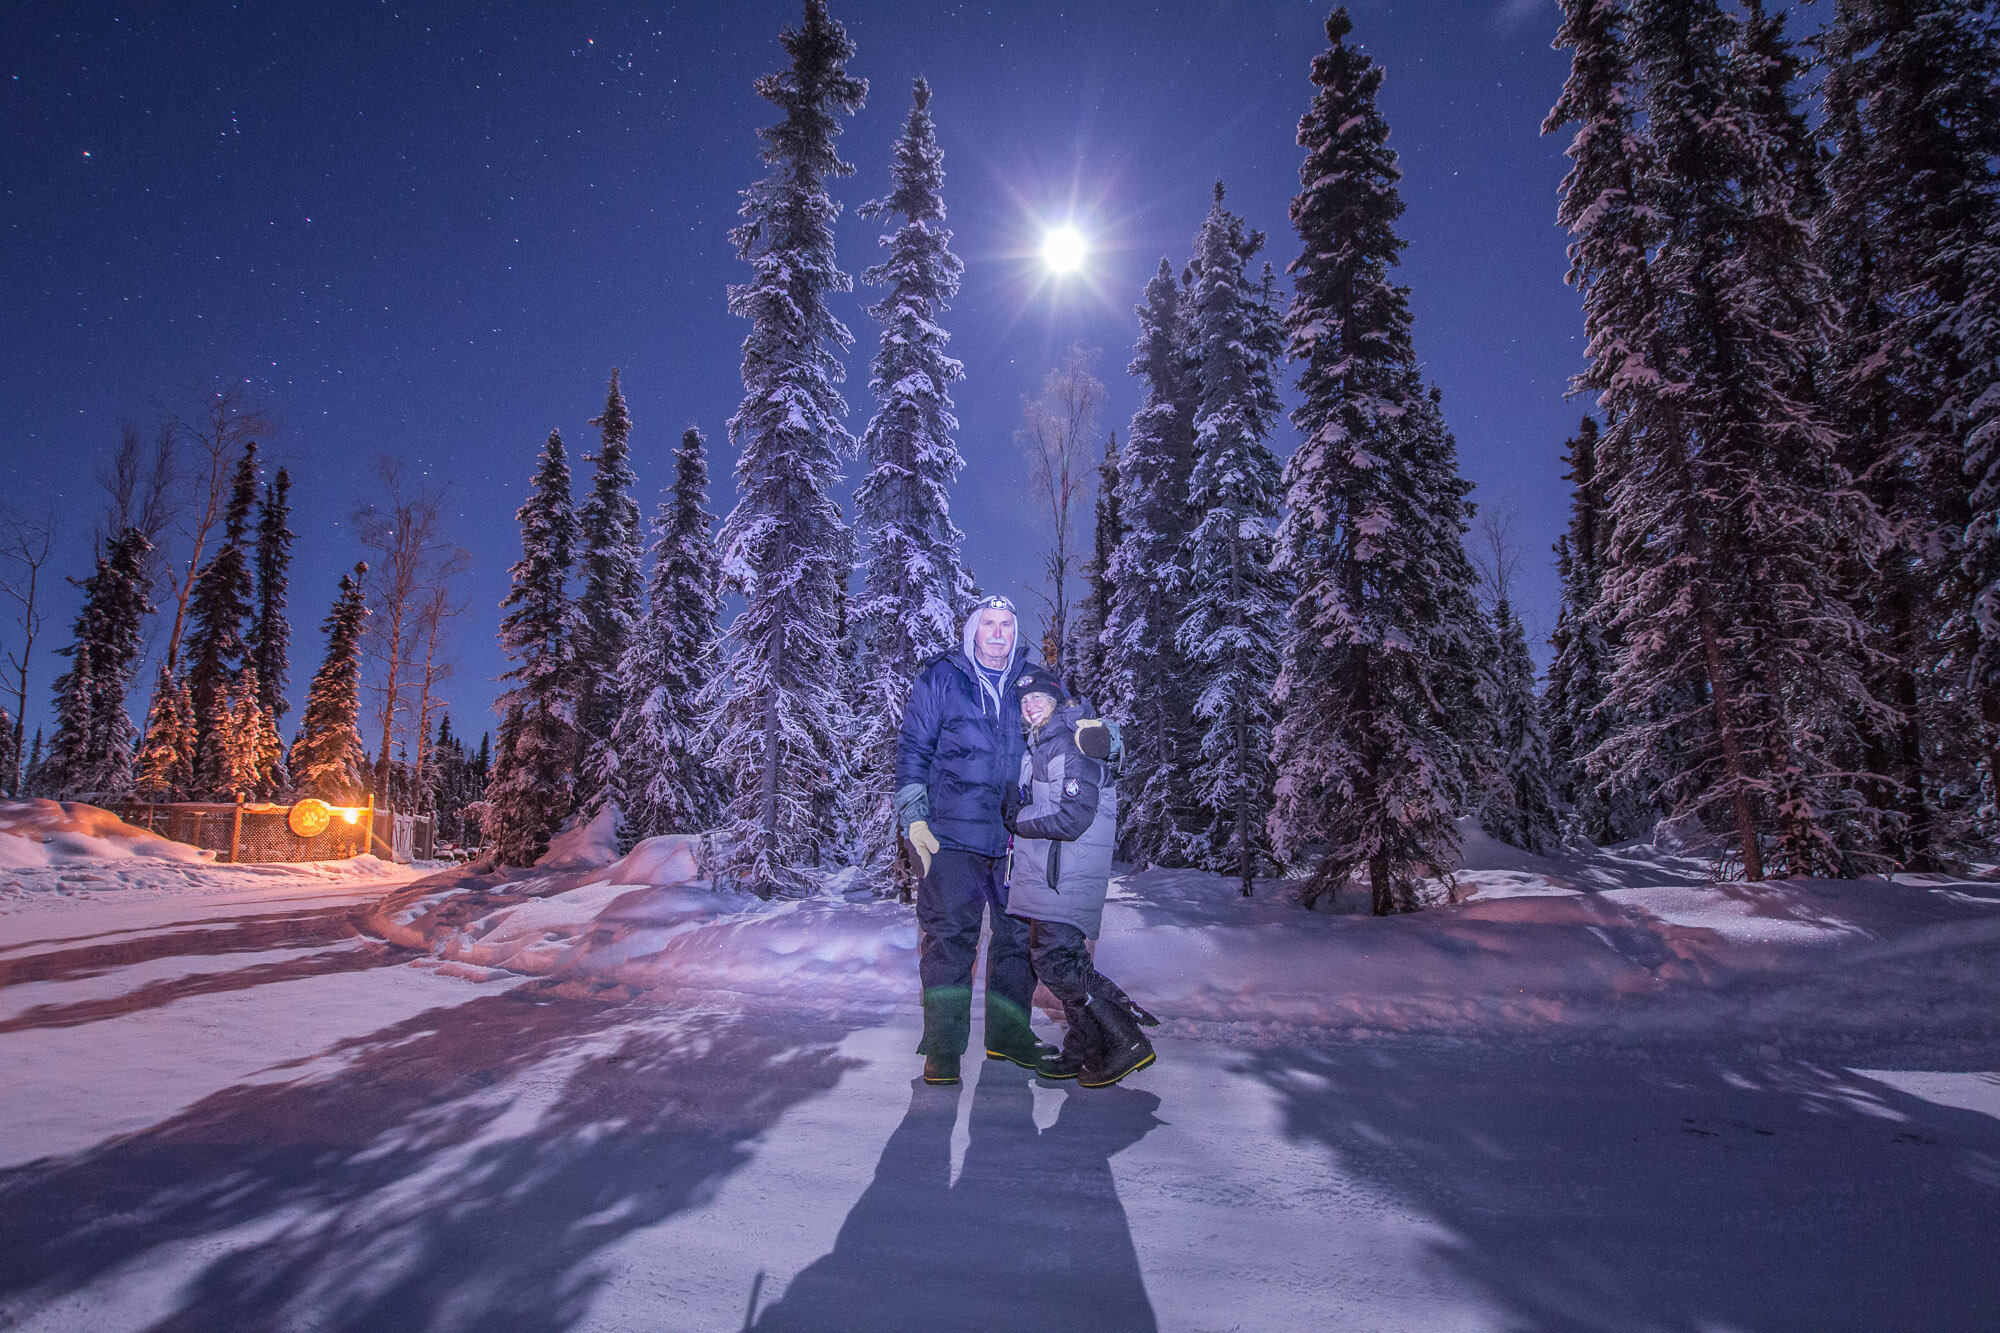 Alaska Northern Lights Tour